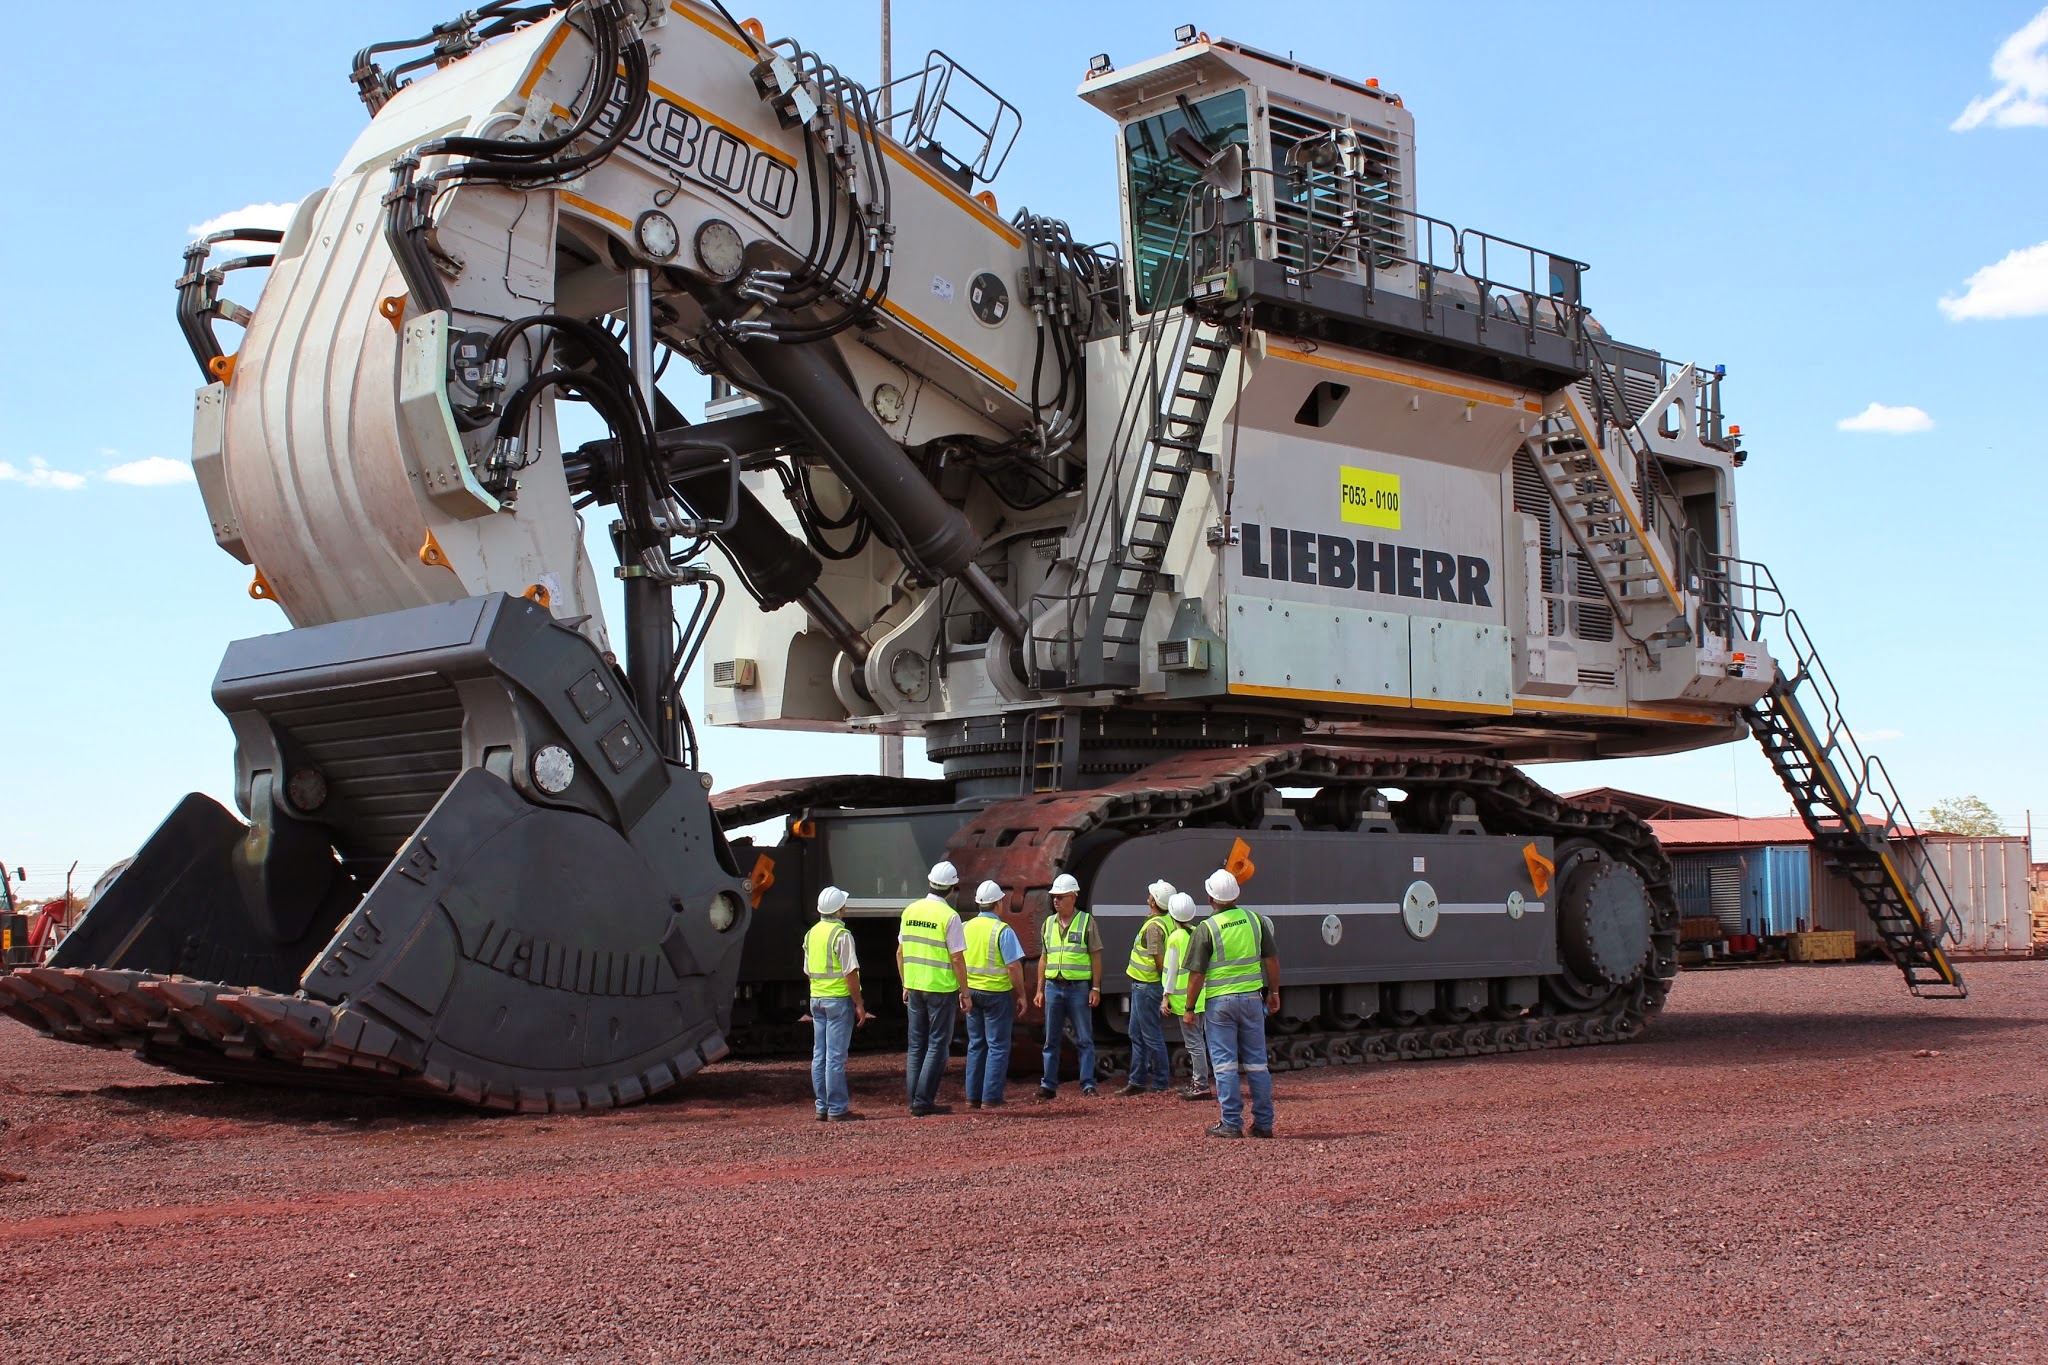 Liebherr 9800 Mining Excavator - Engineer Feed